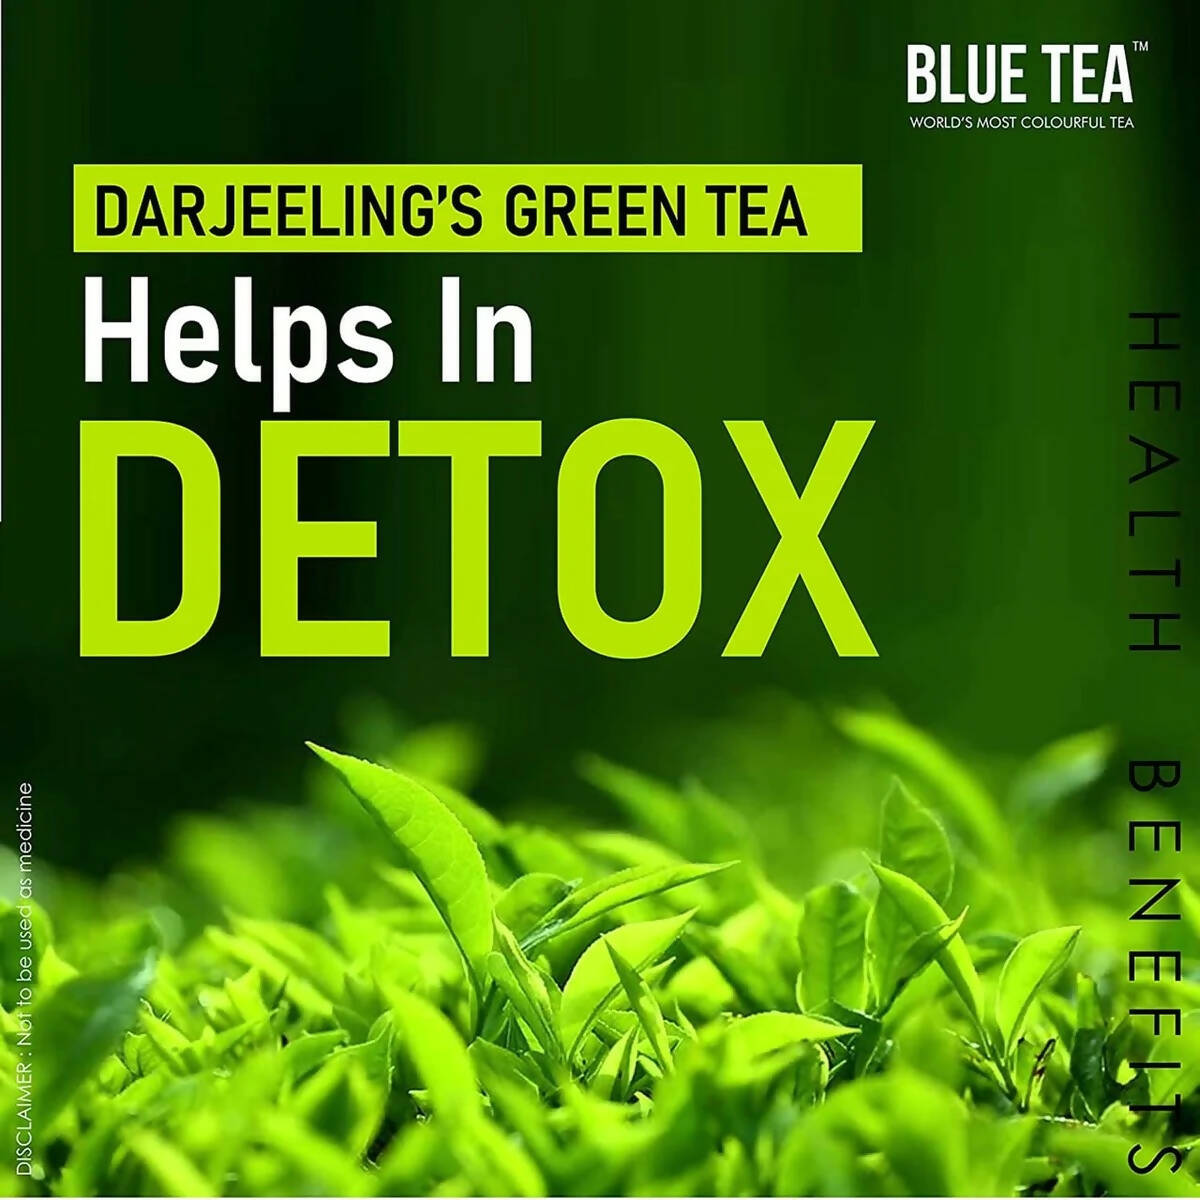 Blue Tea Darjeeling Garcinia Green Tea Bags - Distacart